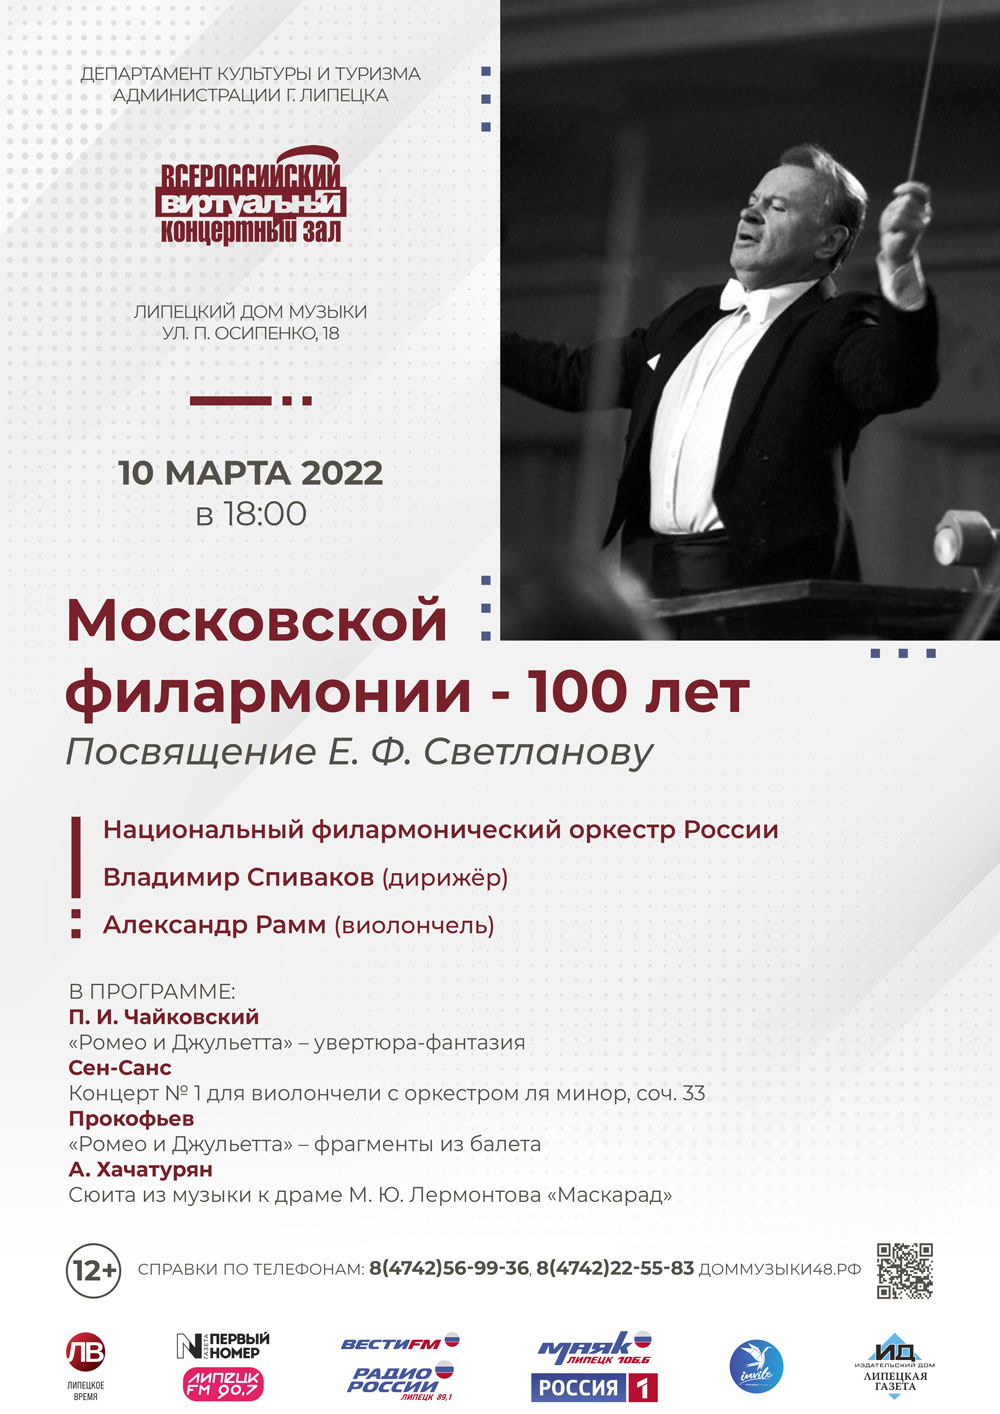 Виртуальный концертный зал: Московской филармонии — 100 лет (10.03.2022 в 18:00)